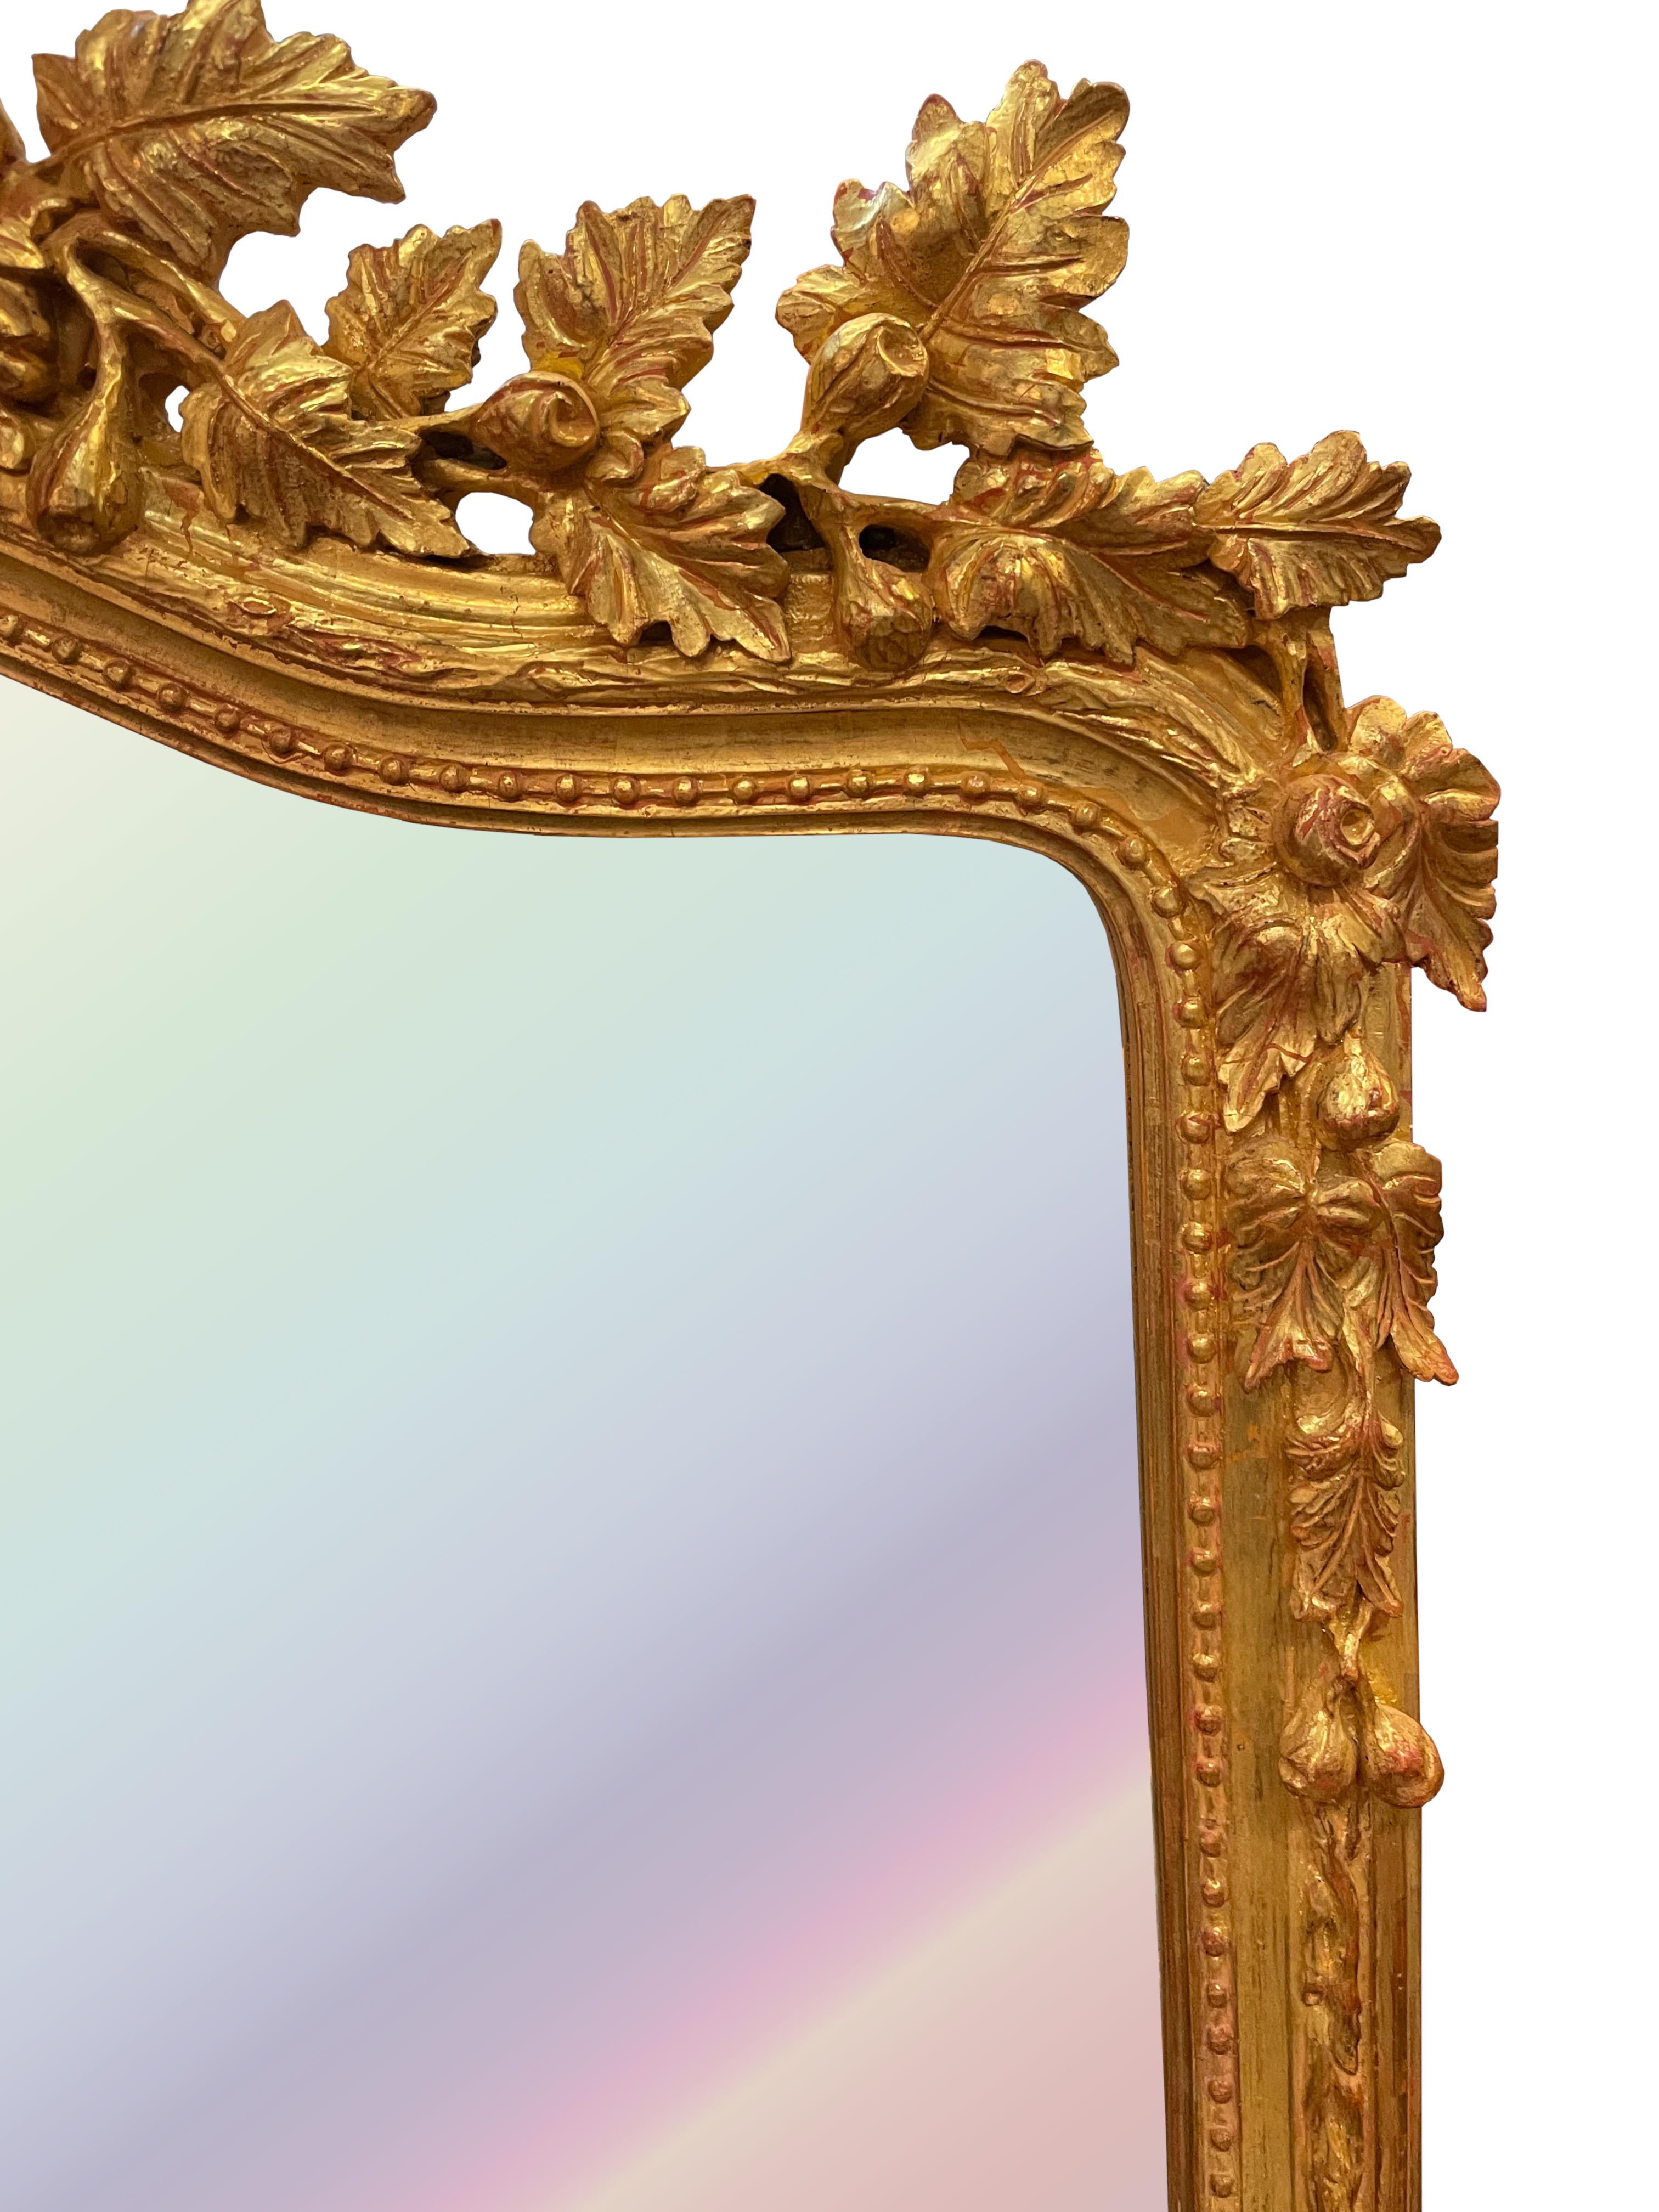 
Miroir en bois doré de style Louis XV
La plaque de miroir arquée et biseautée est entourée d'une bordure sculptée de perles et de vignes, la crête arquée et serpentine est sculptée de feuilles fruitées et d'un ruban noué par un nœud. 
65 x 36 po